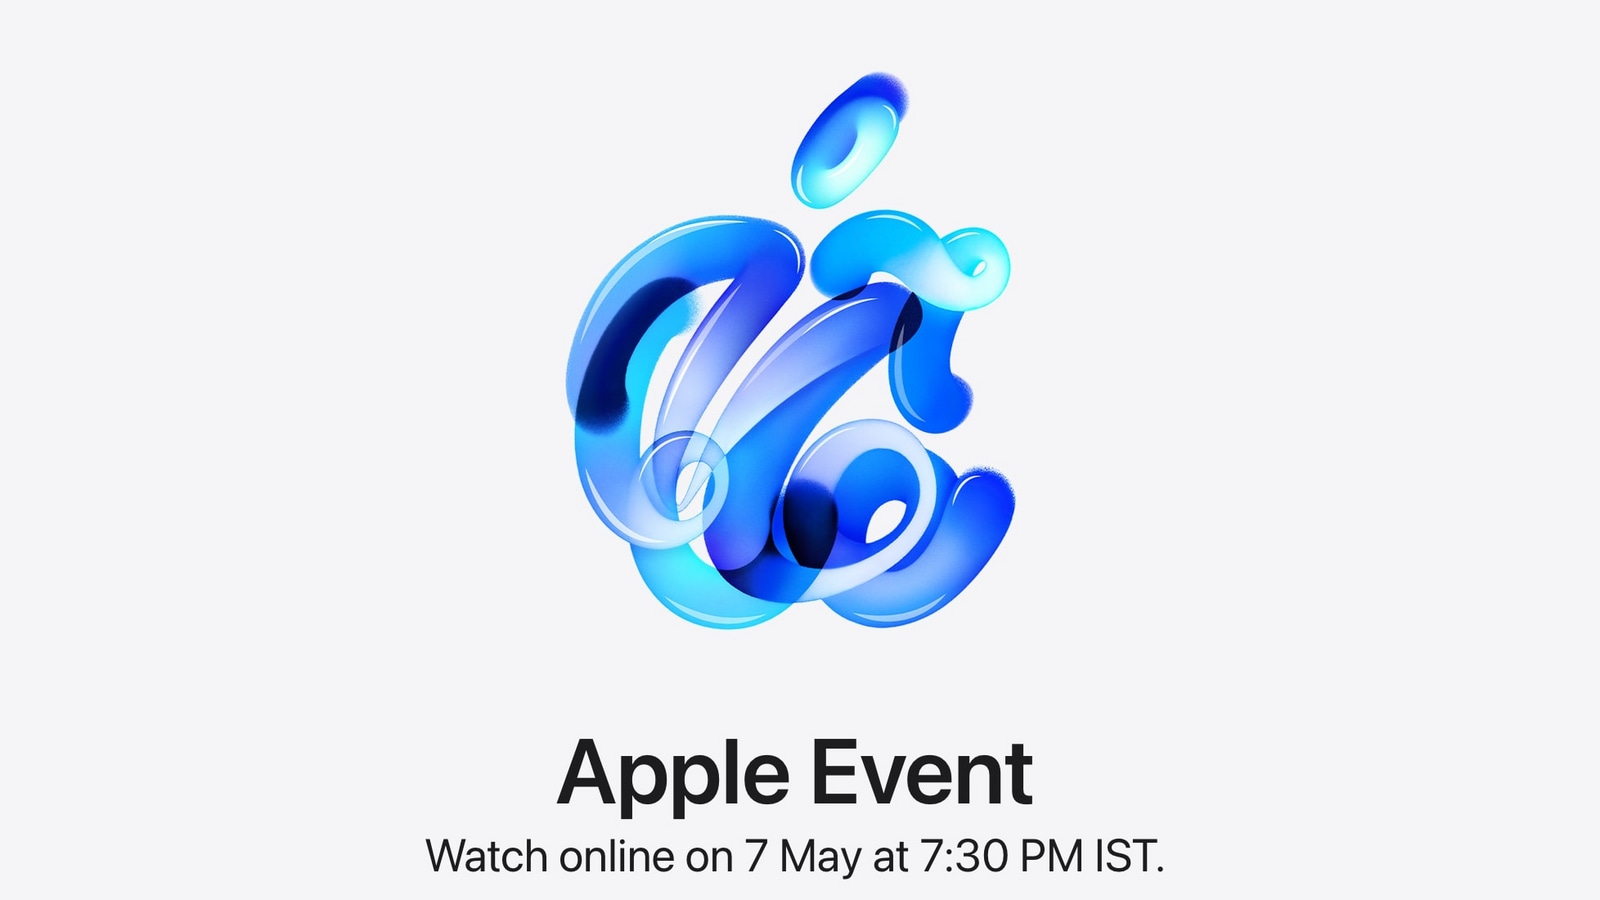 L’evento di lancio di Apple iPad Pro e iPad Air durerà circa 35 minuti: resoconto